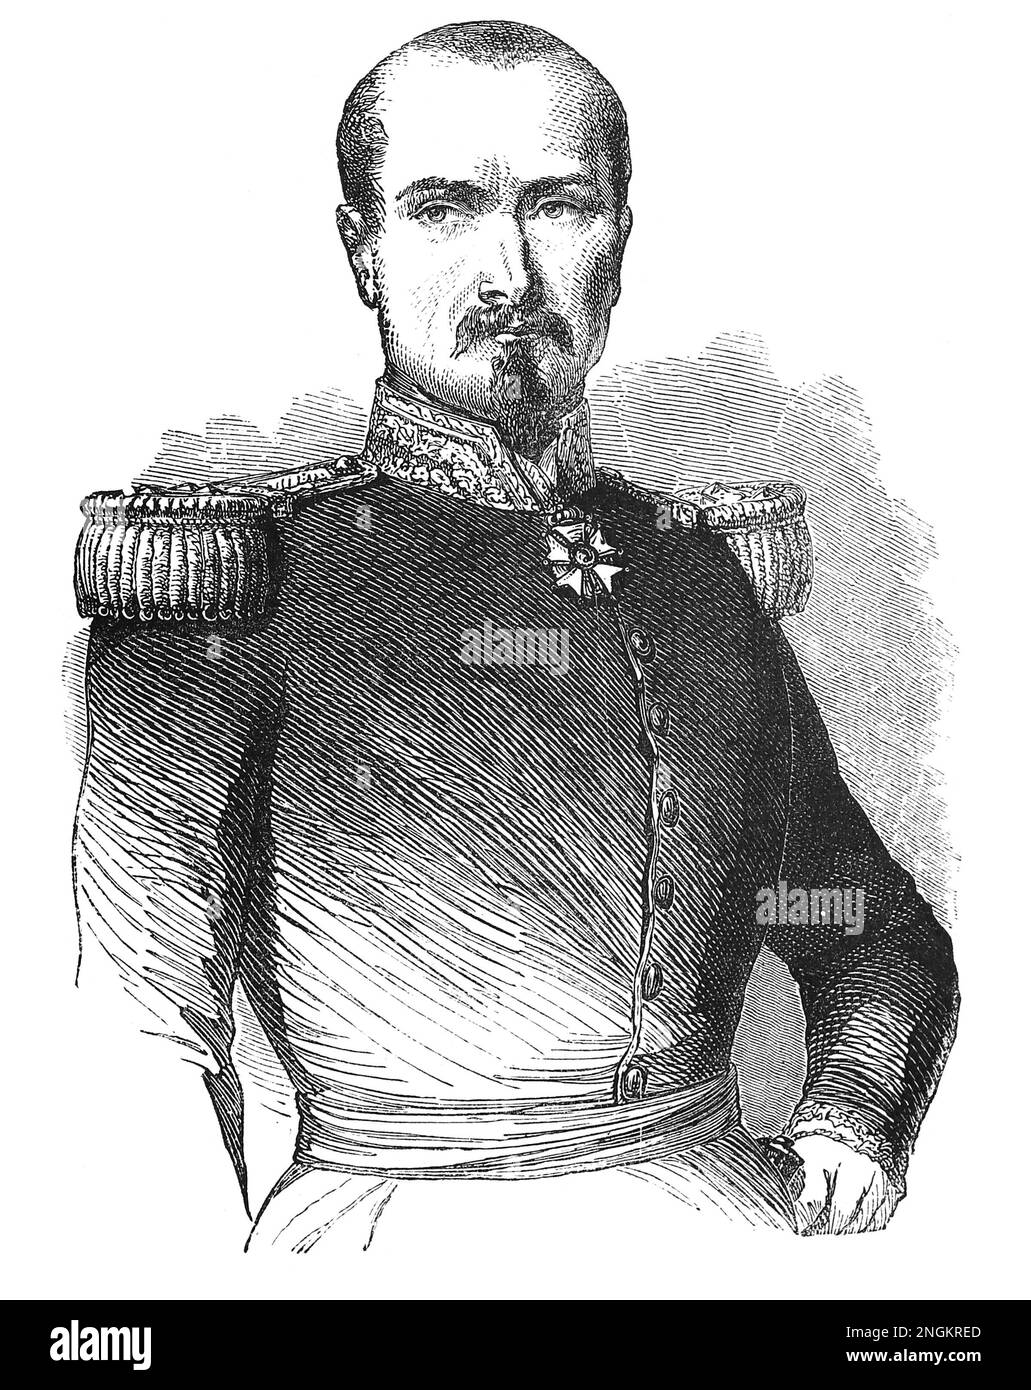 Retrato del general Pierre François Joseph Bosquet (8 de noviembre de 1810 – 5 de febrero de 1861). Ilustración en blanco y negro Foto de stock